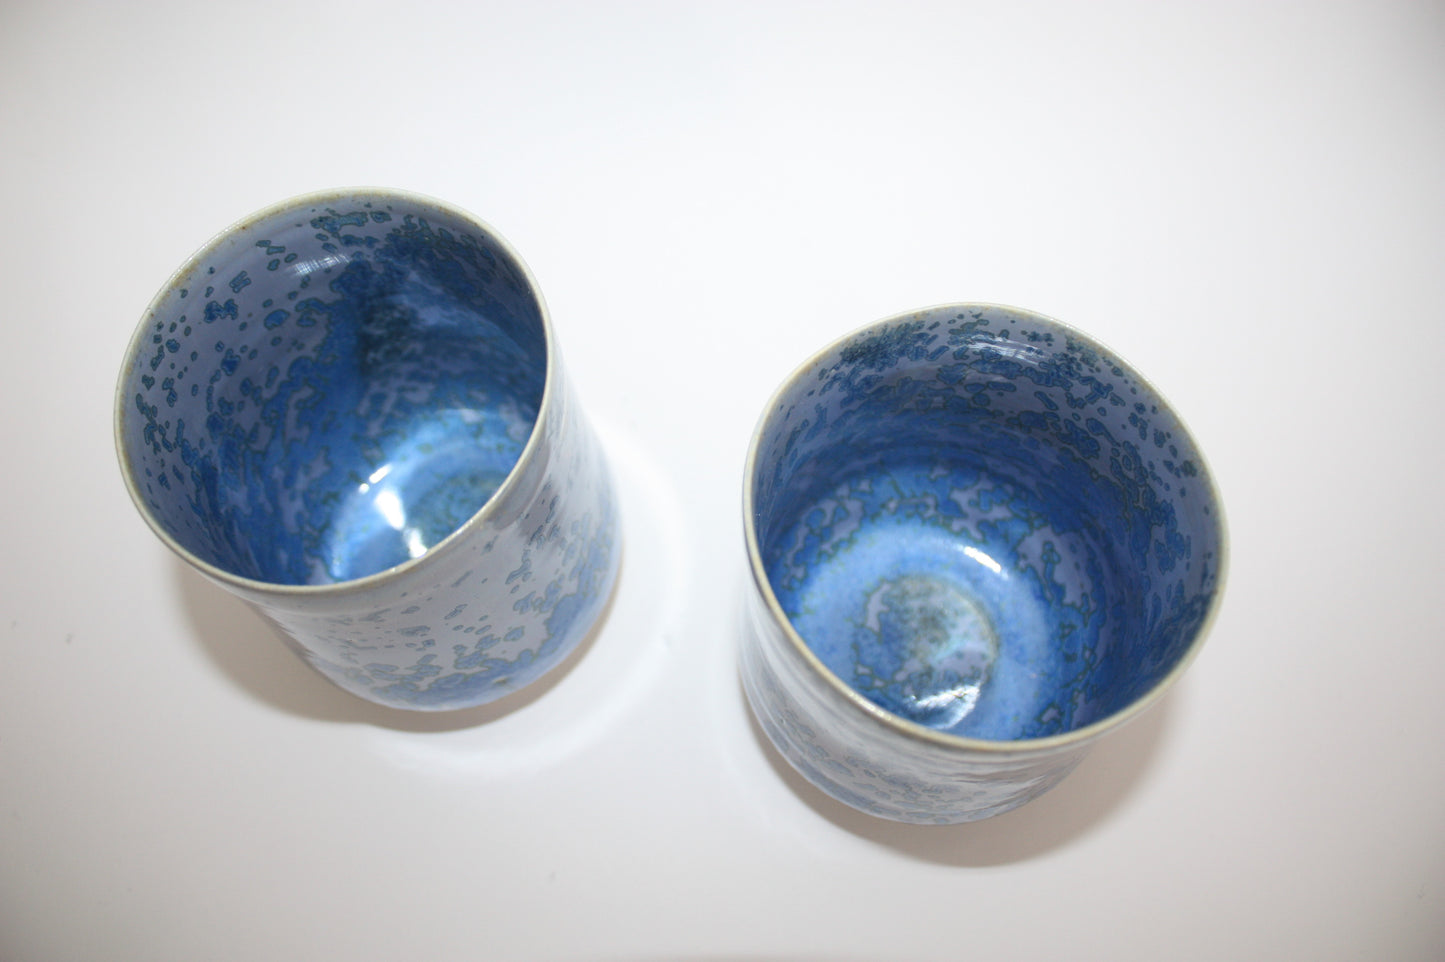 Medium cup, Lagon Bleu n°2